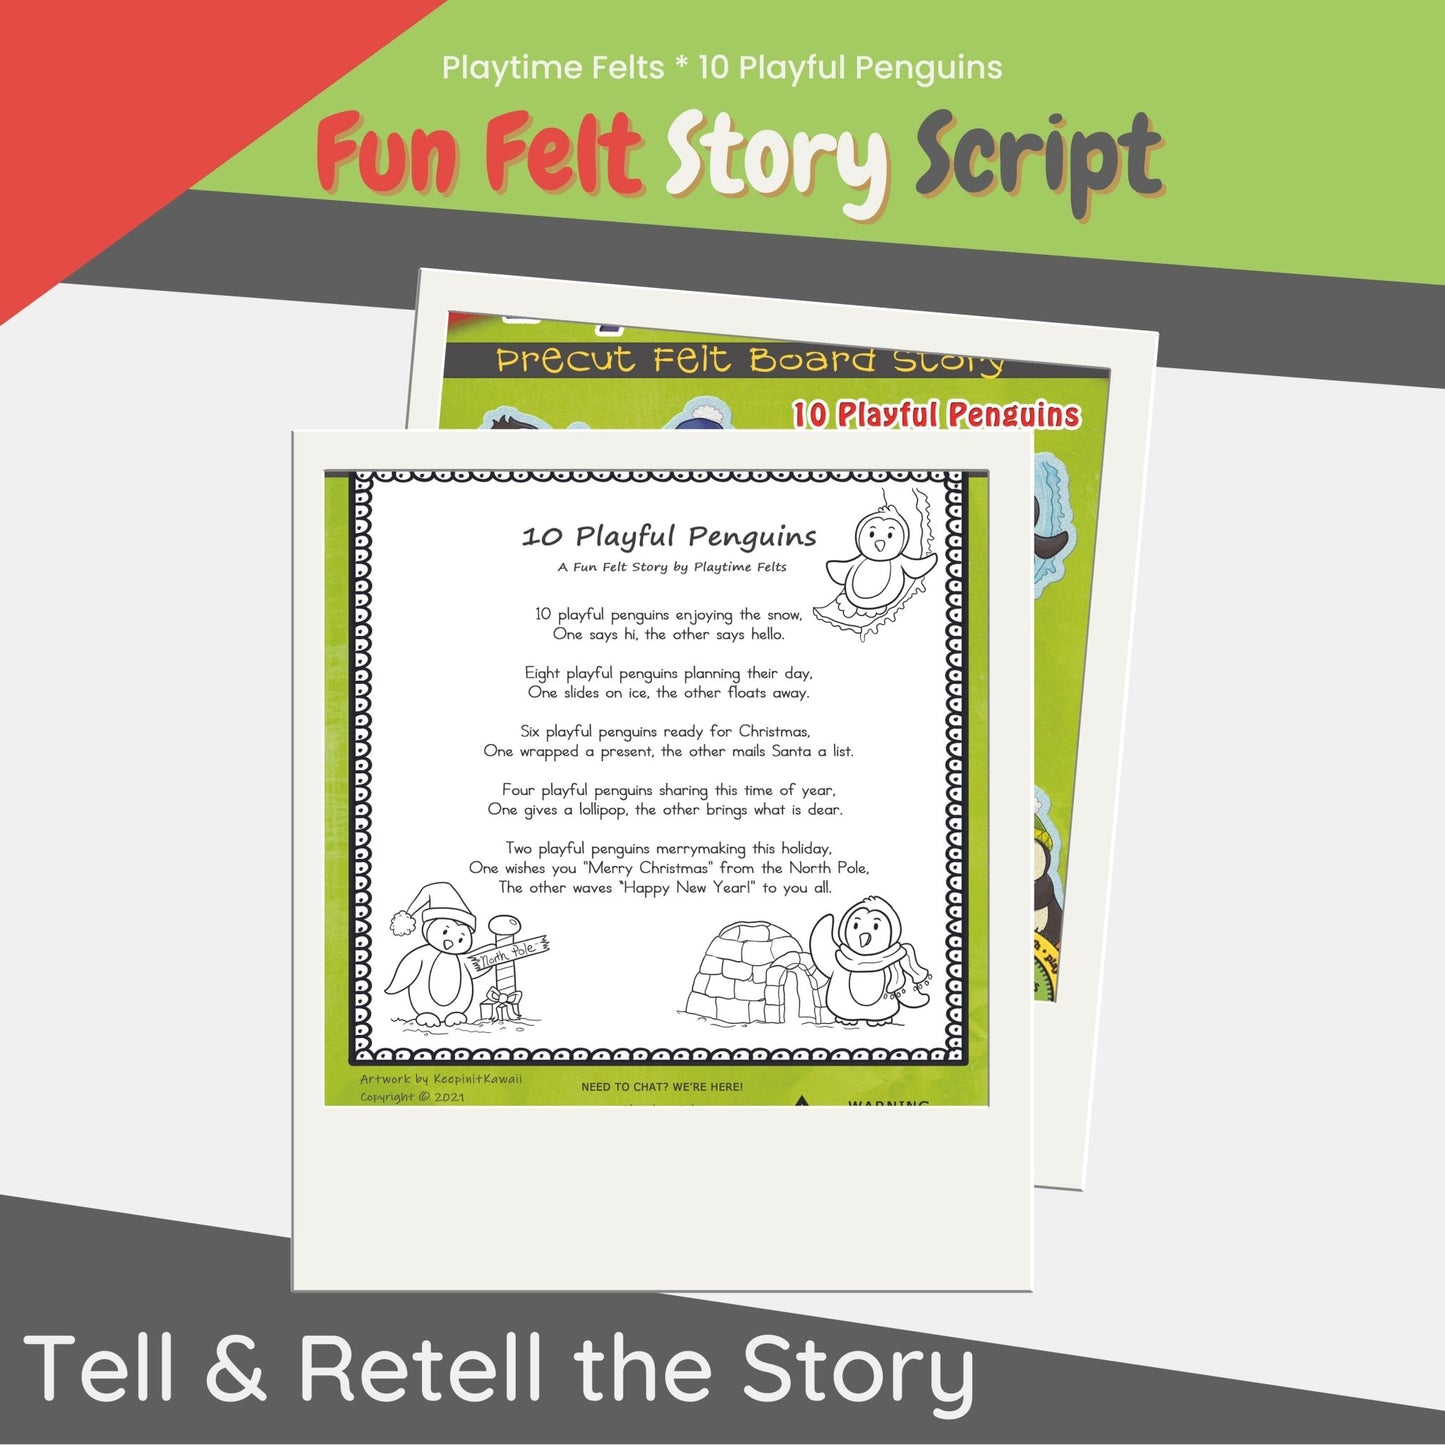 10 Playful Penguins Felt Board Story for Preschoolers - Felt Board Stories for Preschool Classroom Playtime Felts